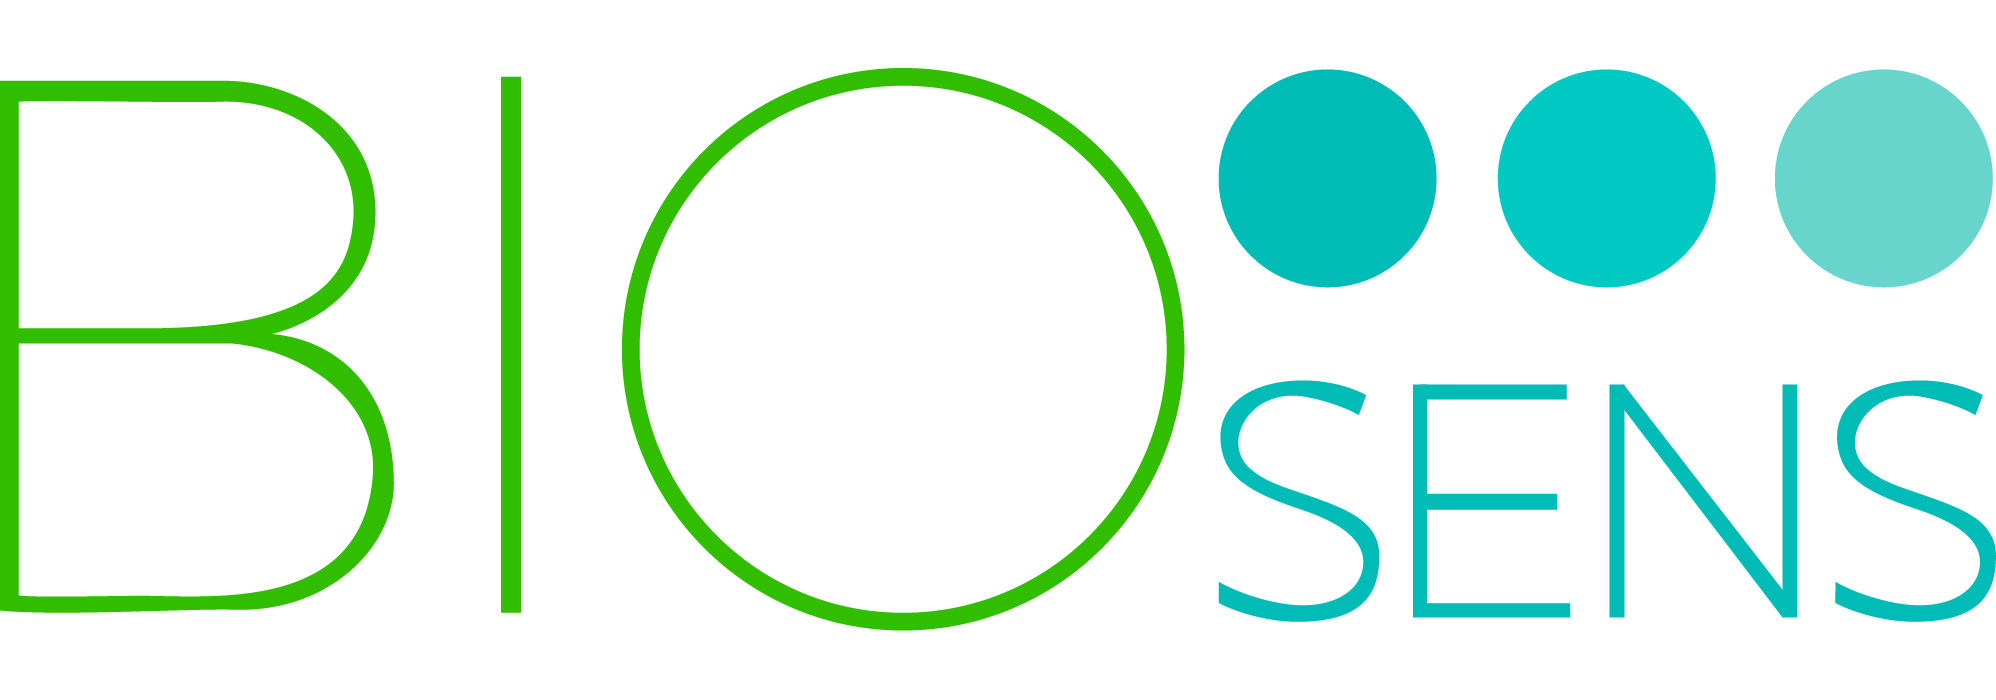 BioSens logo